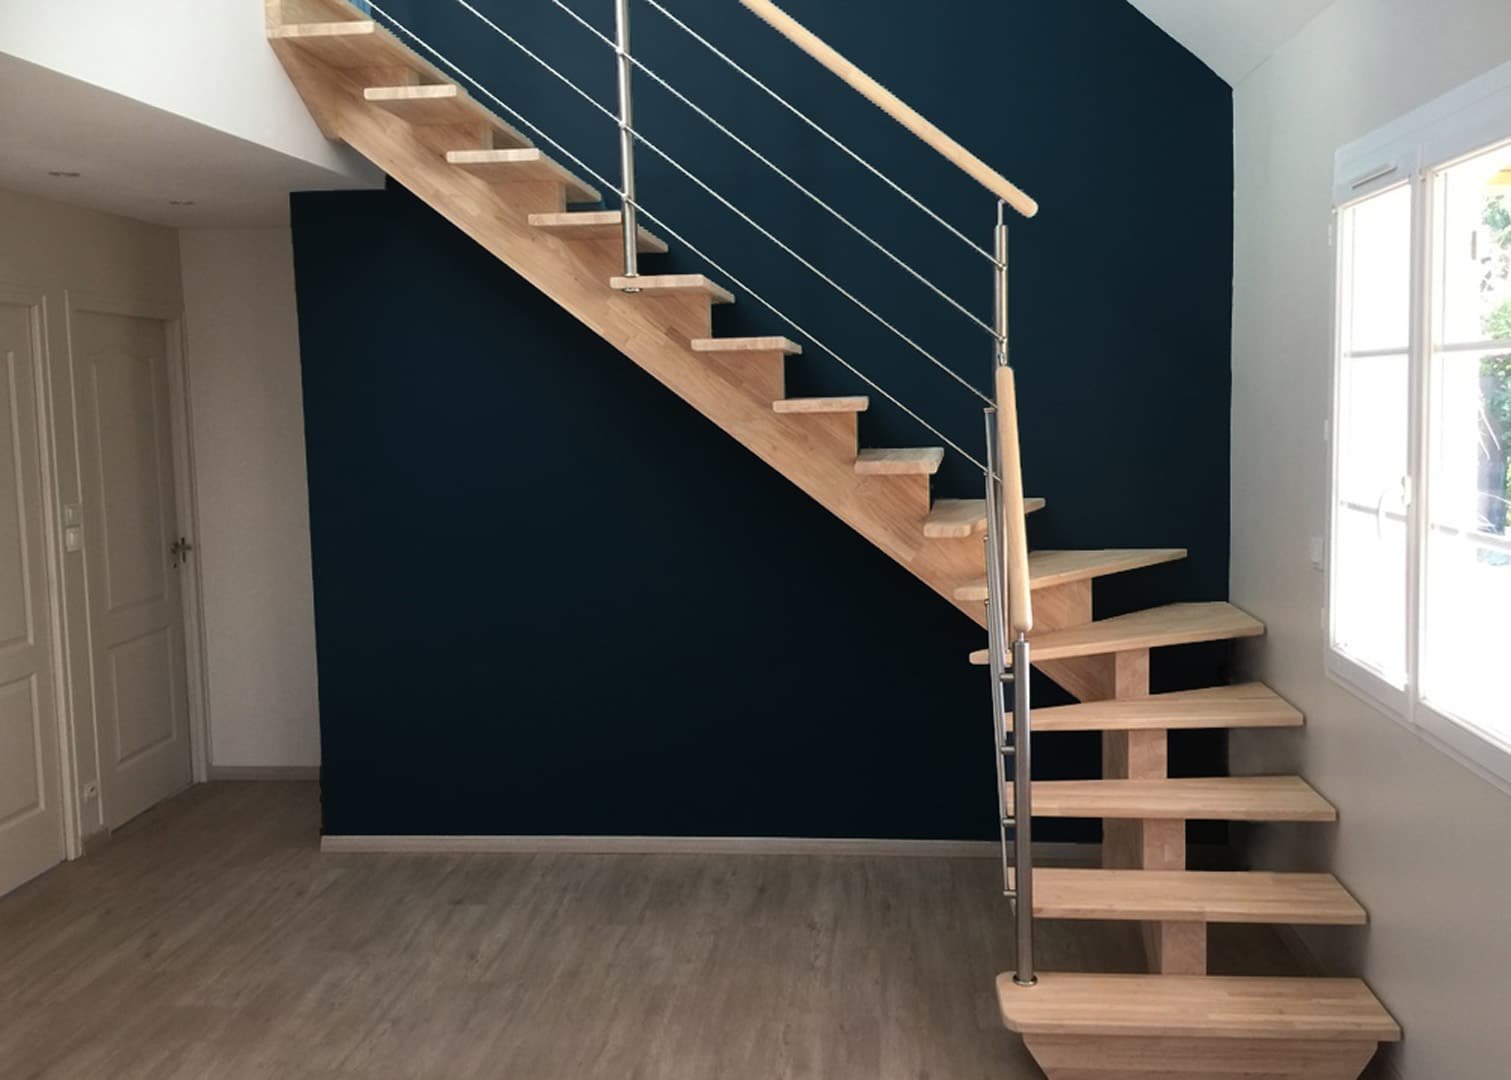 Escalier contemporain avec un mur d'accent bleu marine, marches en bois et balustrade en inox.